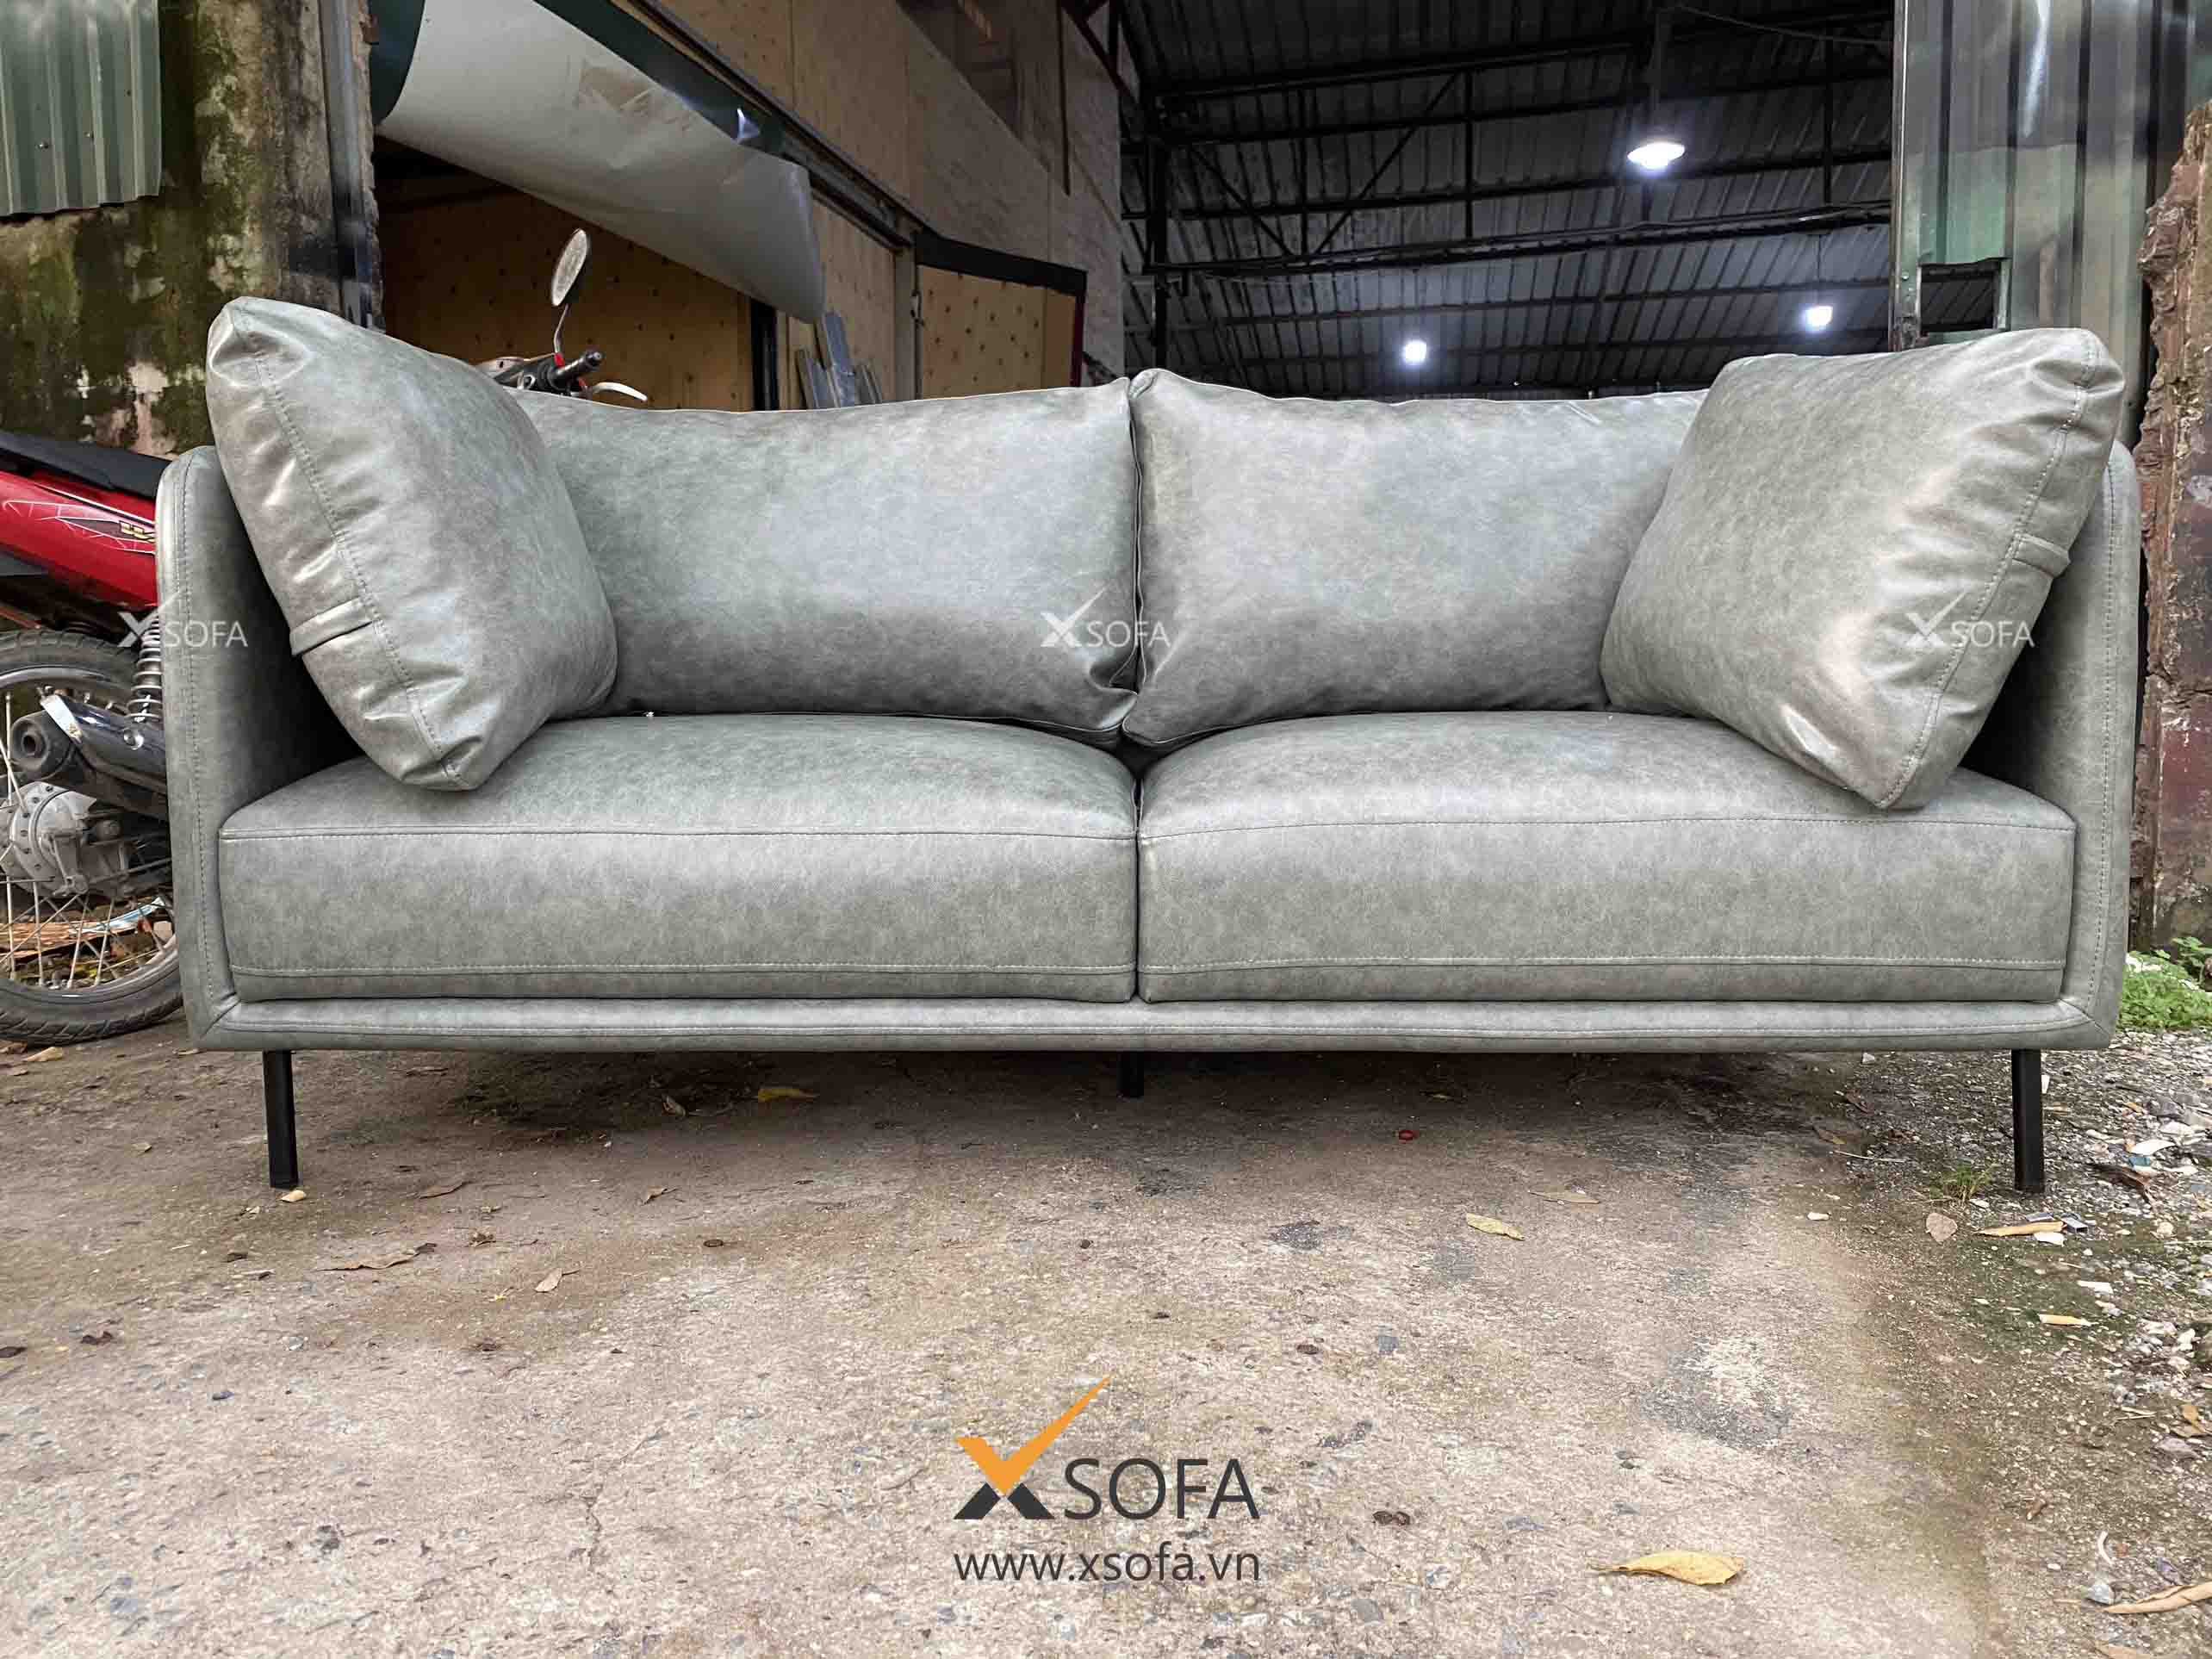 Sofa văng cao cấp: 
Bạn muốn tìm kiếm một chiếc sofa cao cấp và tiện nghi cho gia đình mình? Sofa văng cao cấp sẽ là sự lựa chọn hoàn hảo cho bạn. Với thiết kế văng đơn giản và cao cấp, sofa văng cao cấp sẽ tạo nên một không gian sống đẳng cấp và tiện nghi cho gia đình bạn.